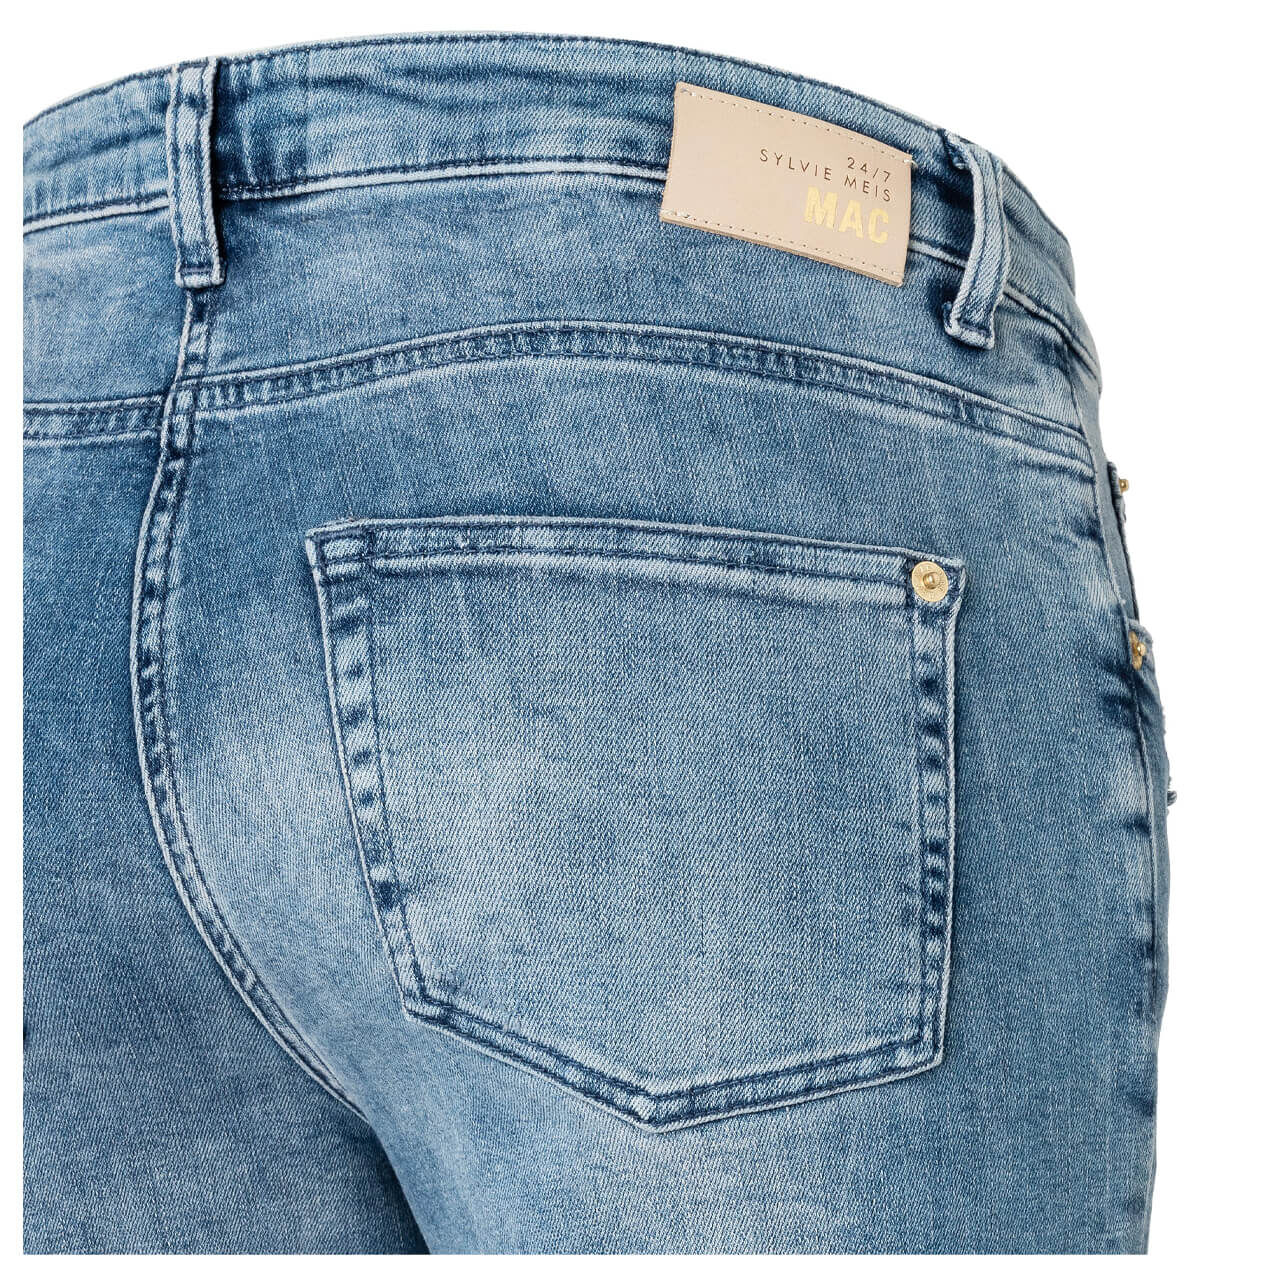 MAC Jeans Rich Culotte für Damen in Hellblau verwaschen, FarbNr.: D456